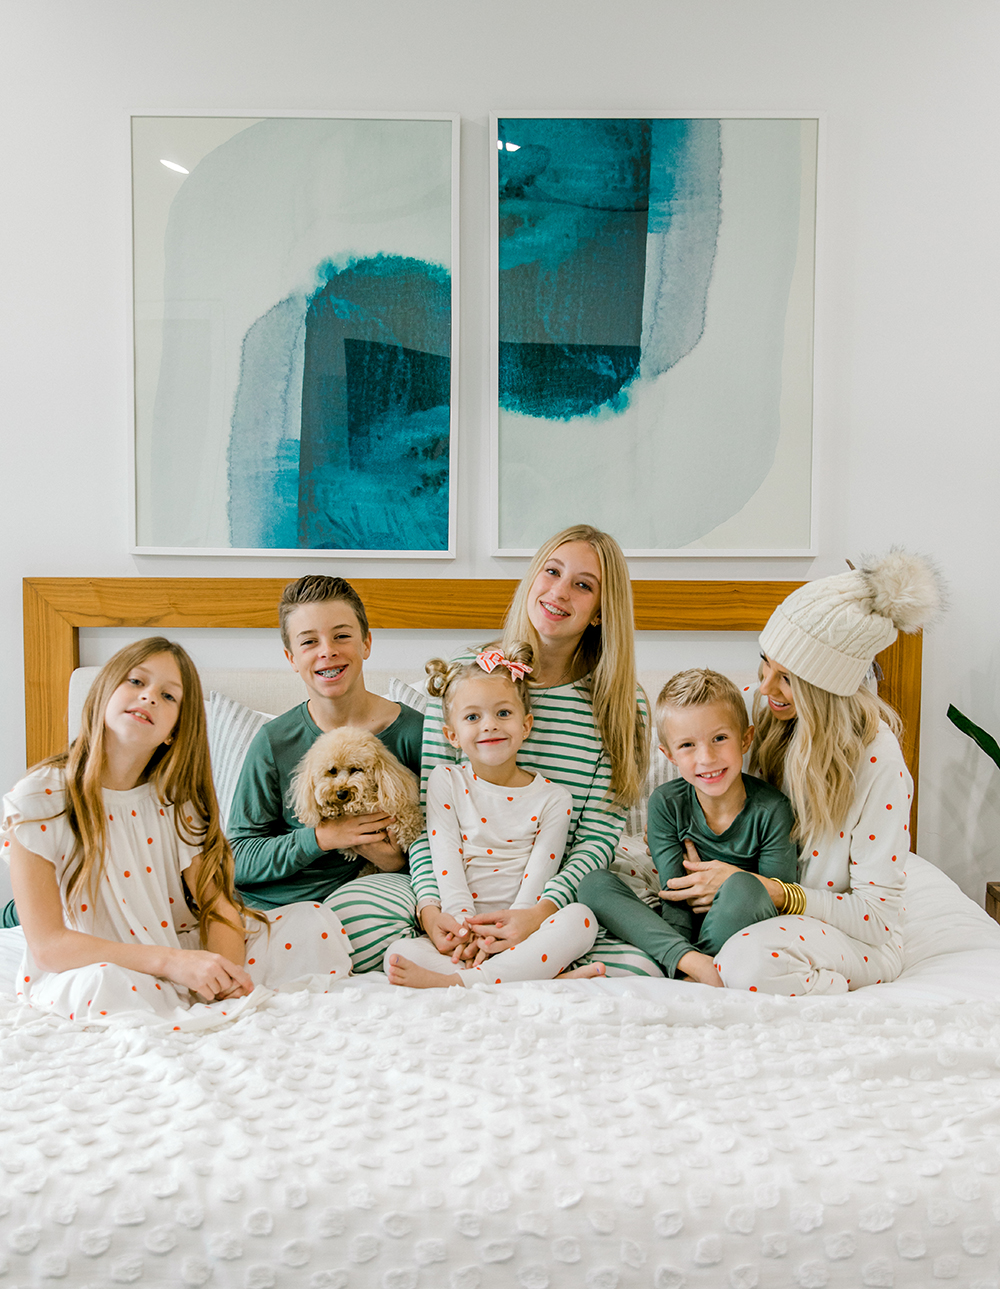 Kailee Wright family Christmas pajamas plain jane